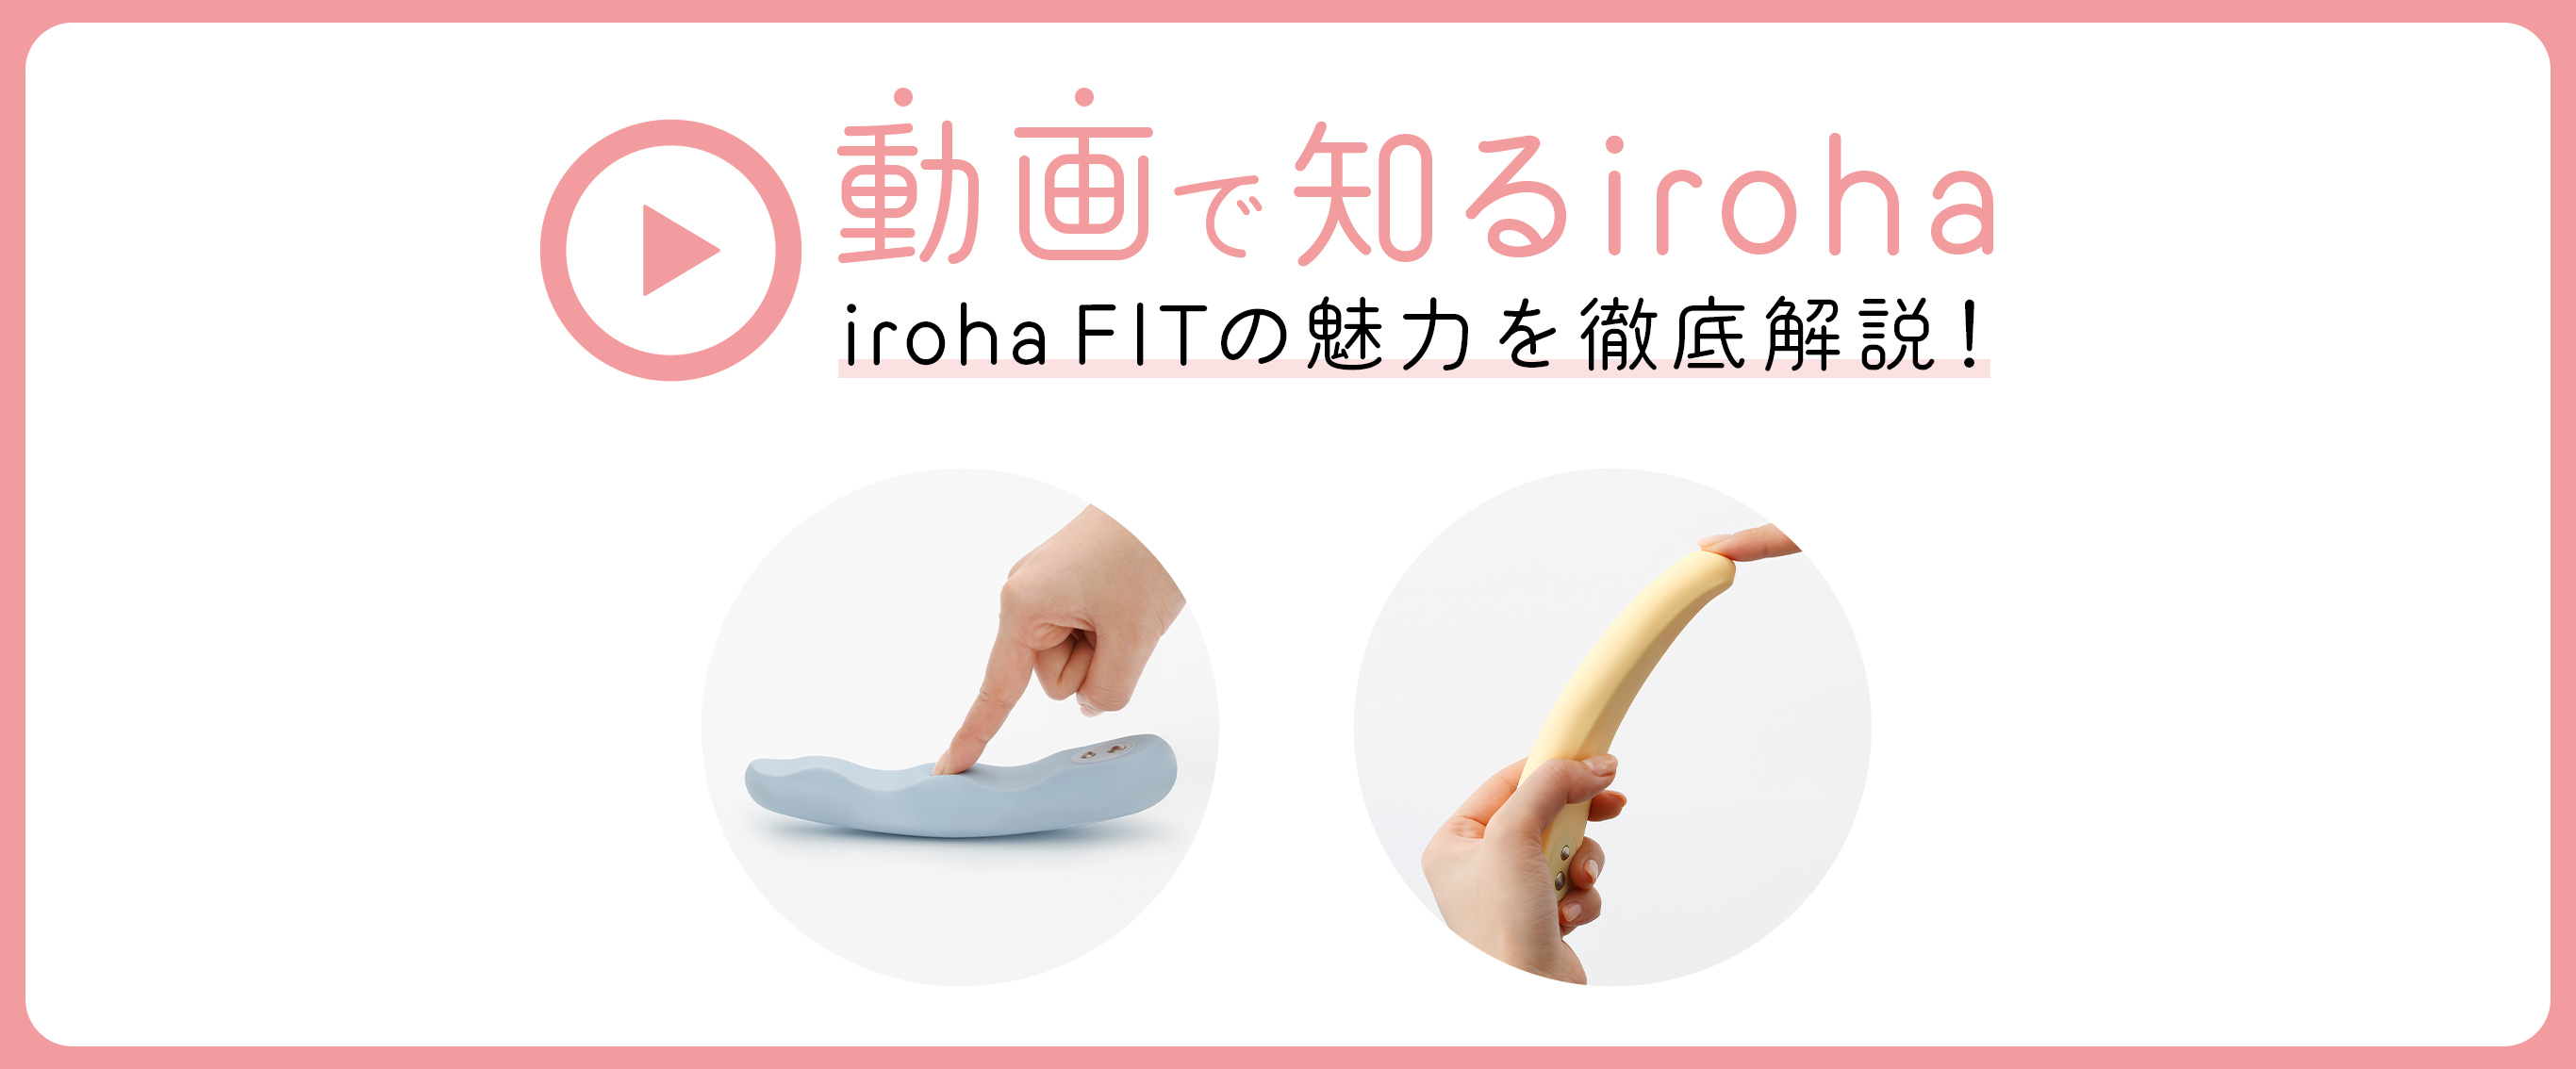 からだにぴったりフィット！しなりが特徴の「iroha FIT」を動画で解説♡